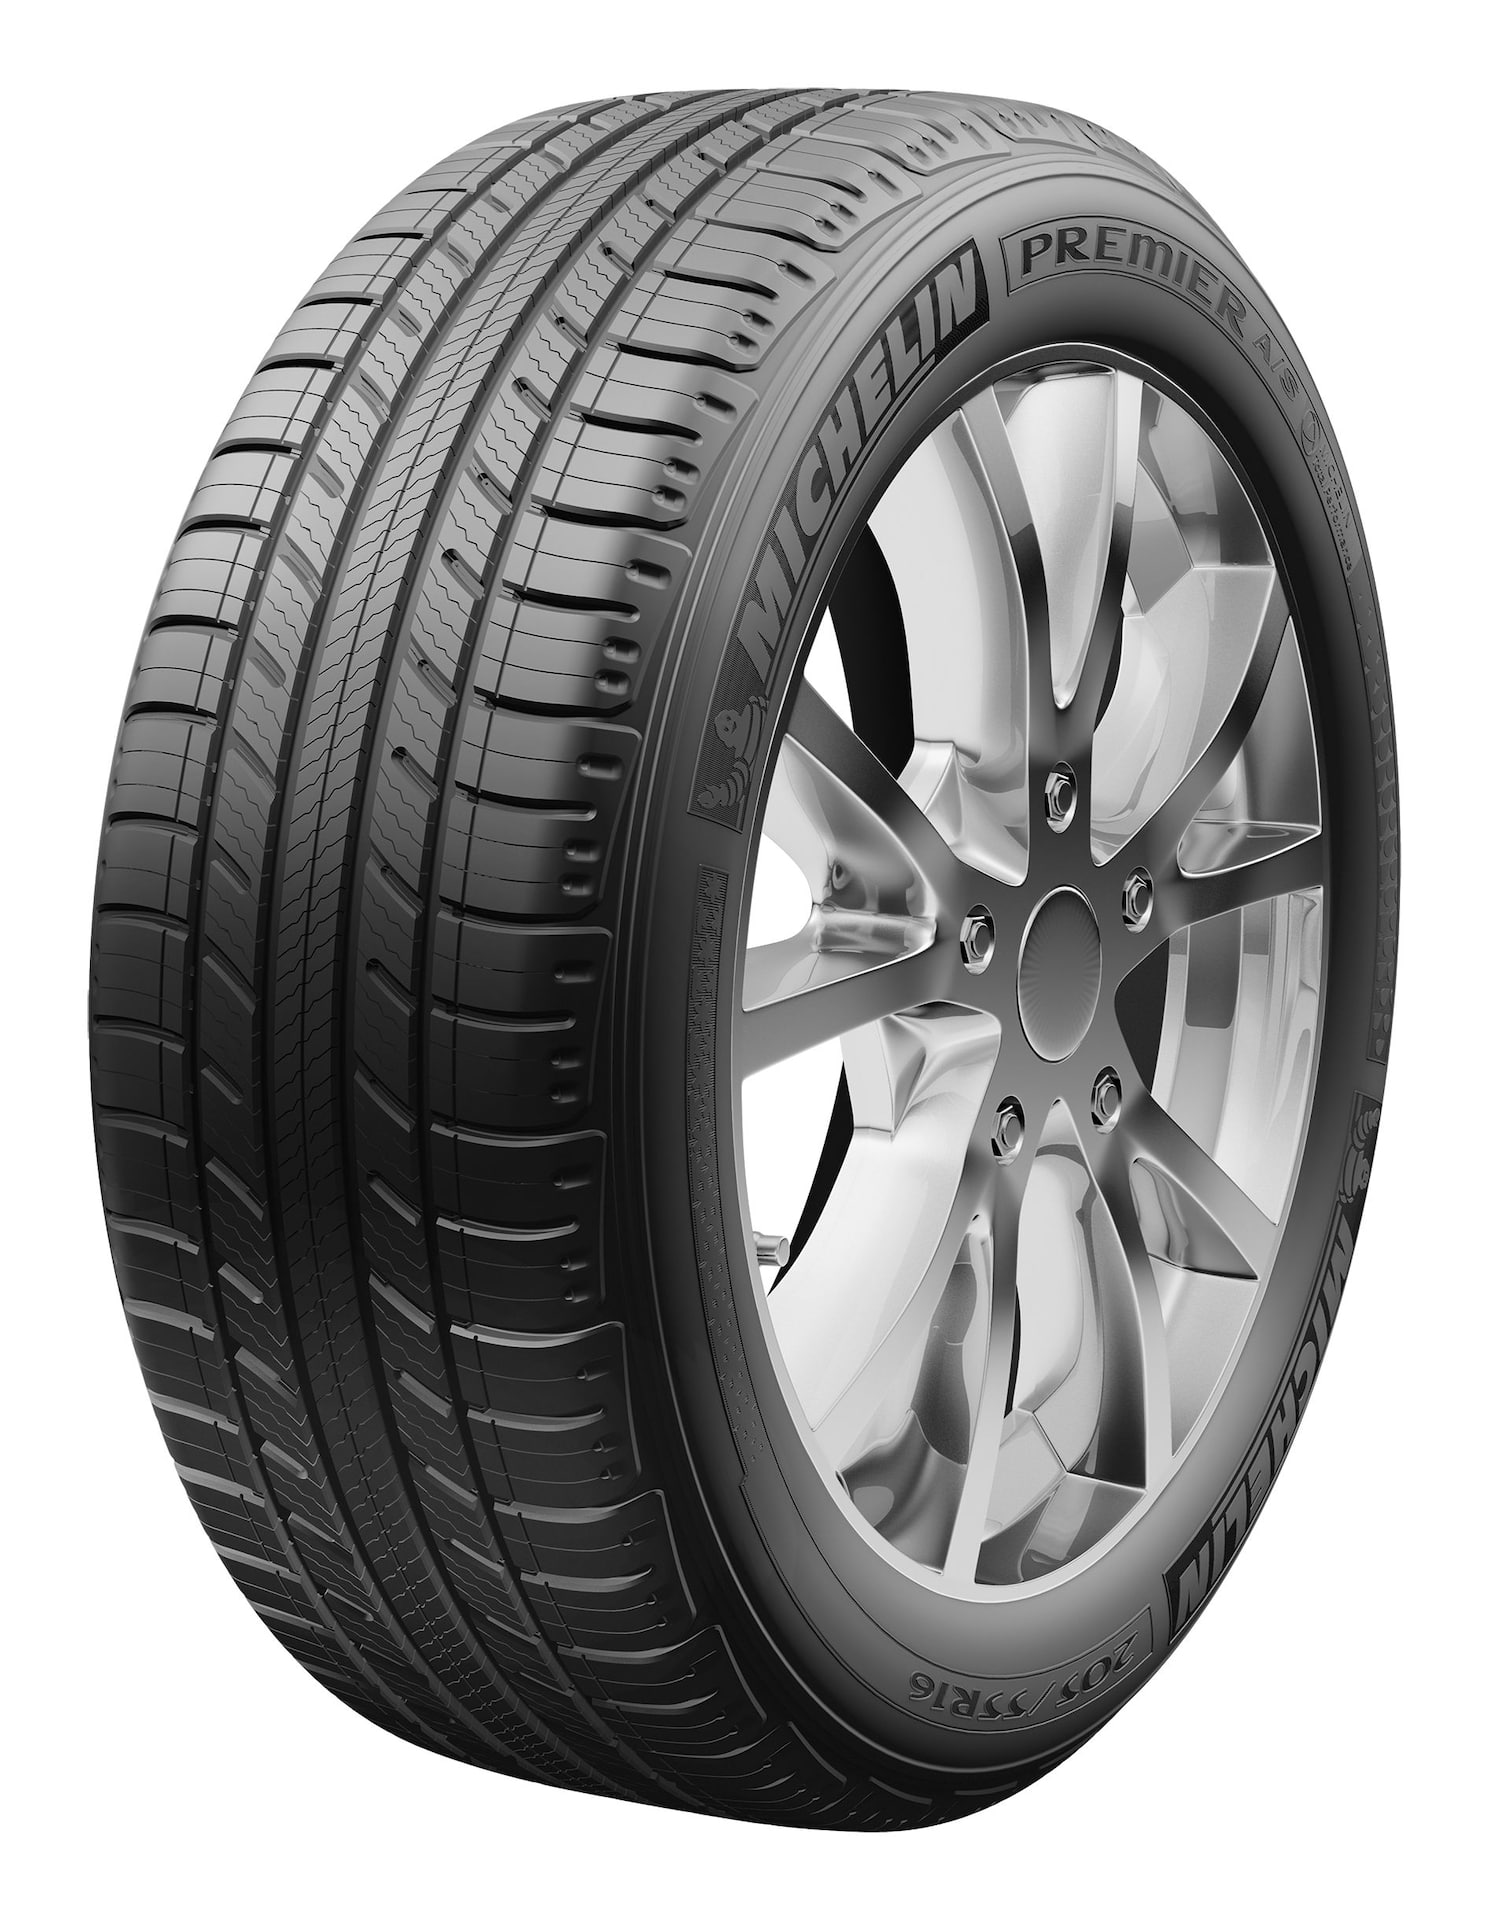 Michelin Premier A/S All Season Tire For Passenger & CUV